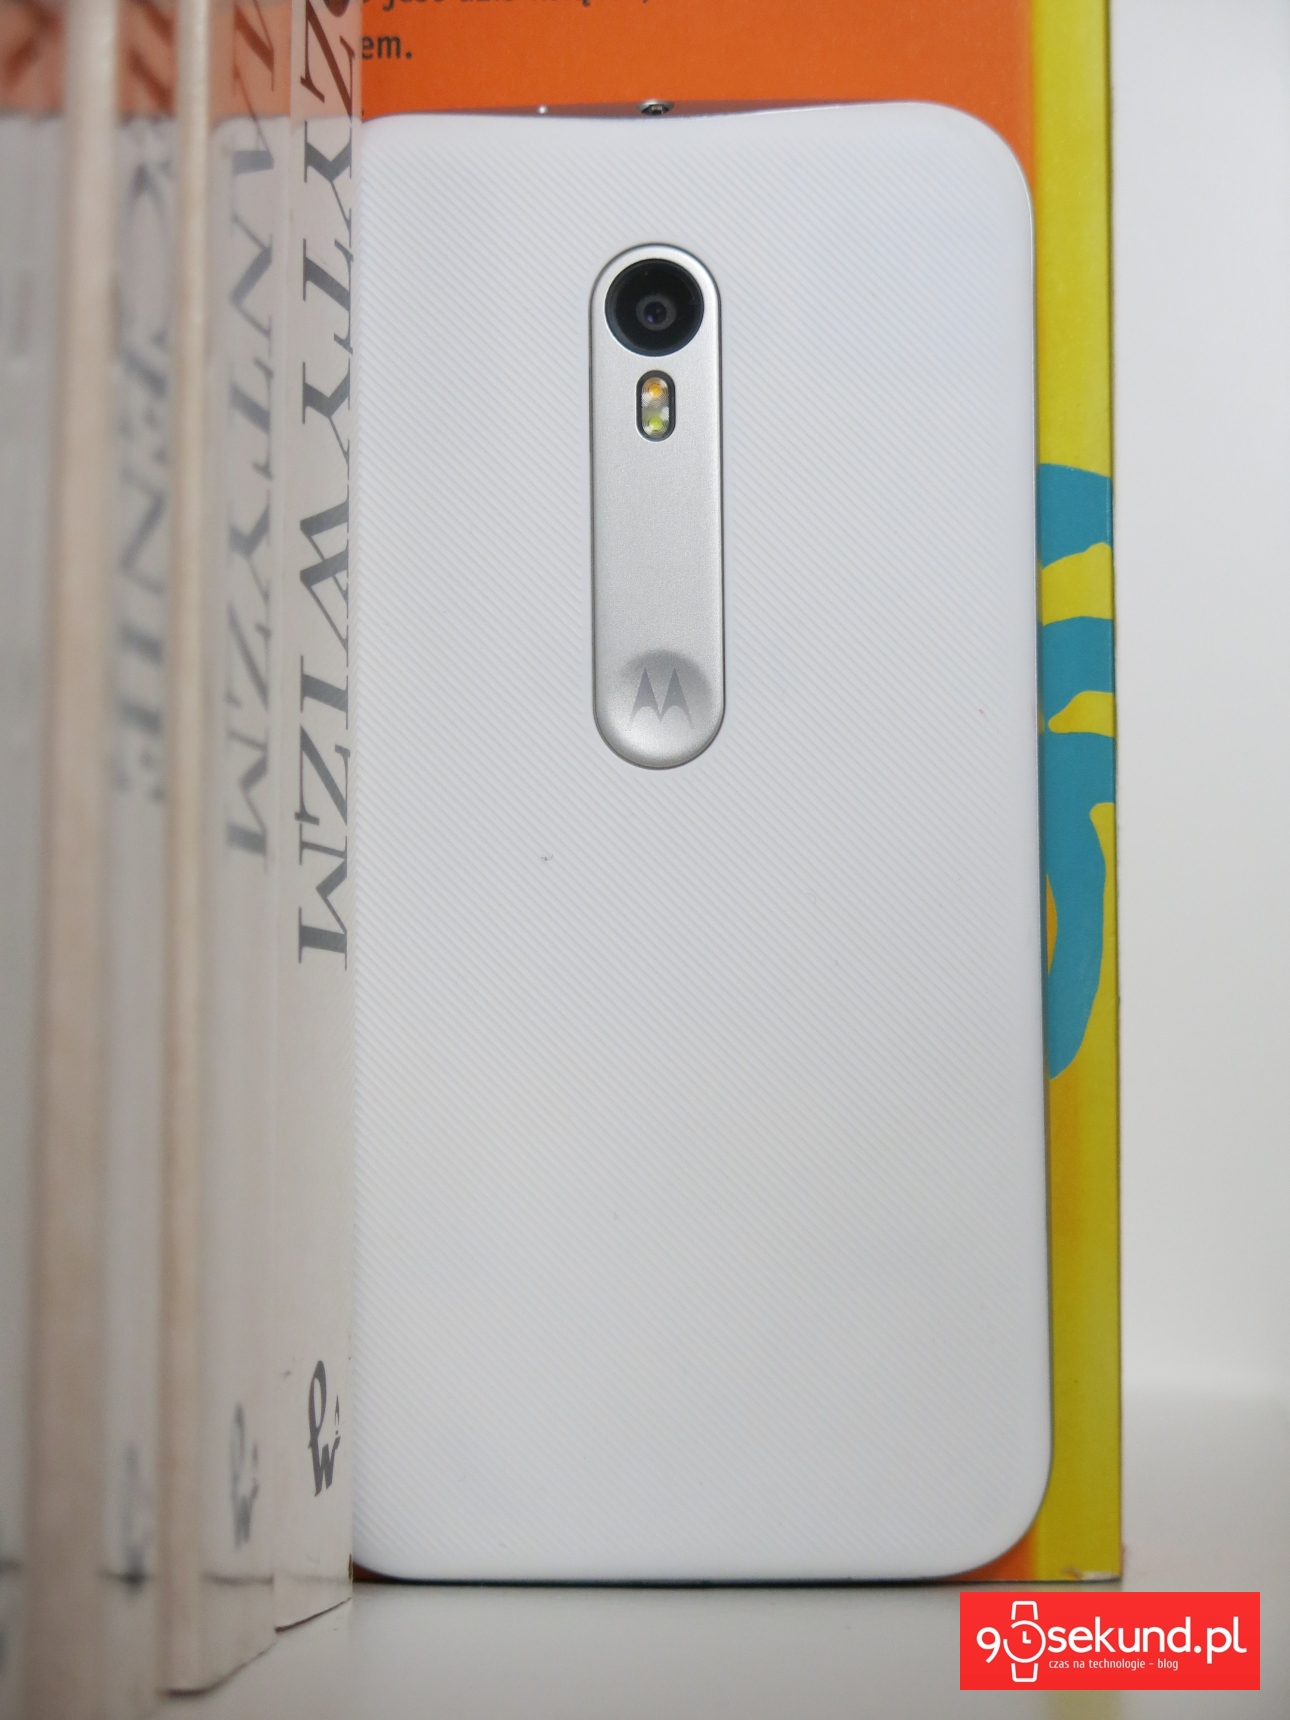 Lenovo Motorola Moto G 3-gen. (2015) - 90sekund.pl